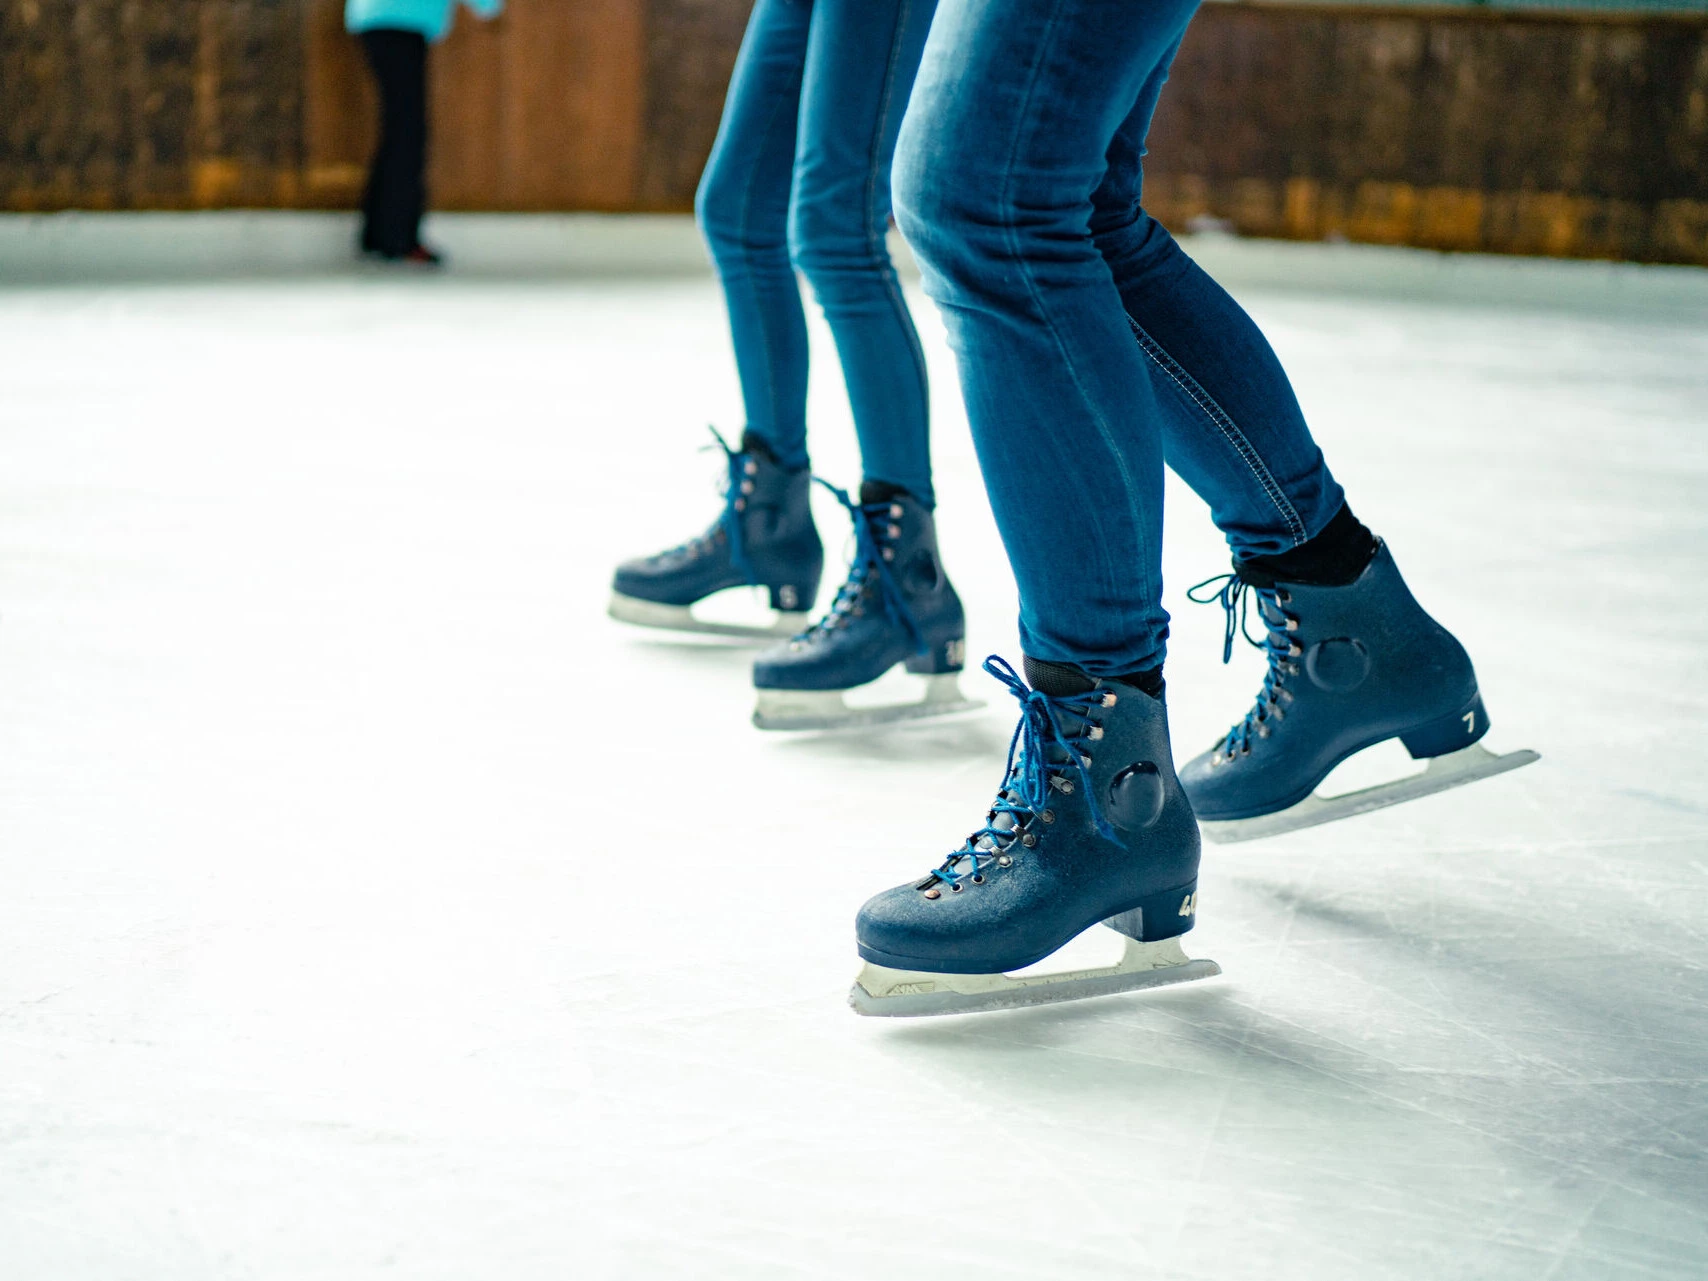 Wir kennen die besten Orte fürs Schlittschuhlaufen. Kommen Sie mit uns aufs Eis...